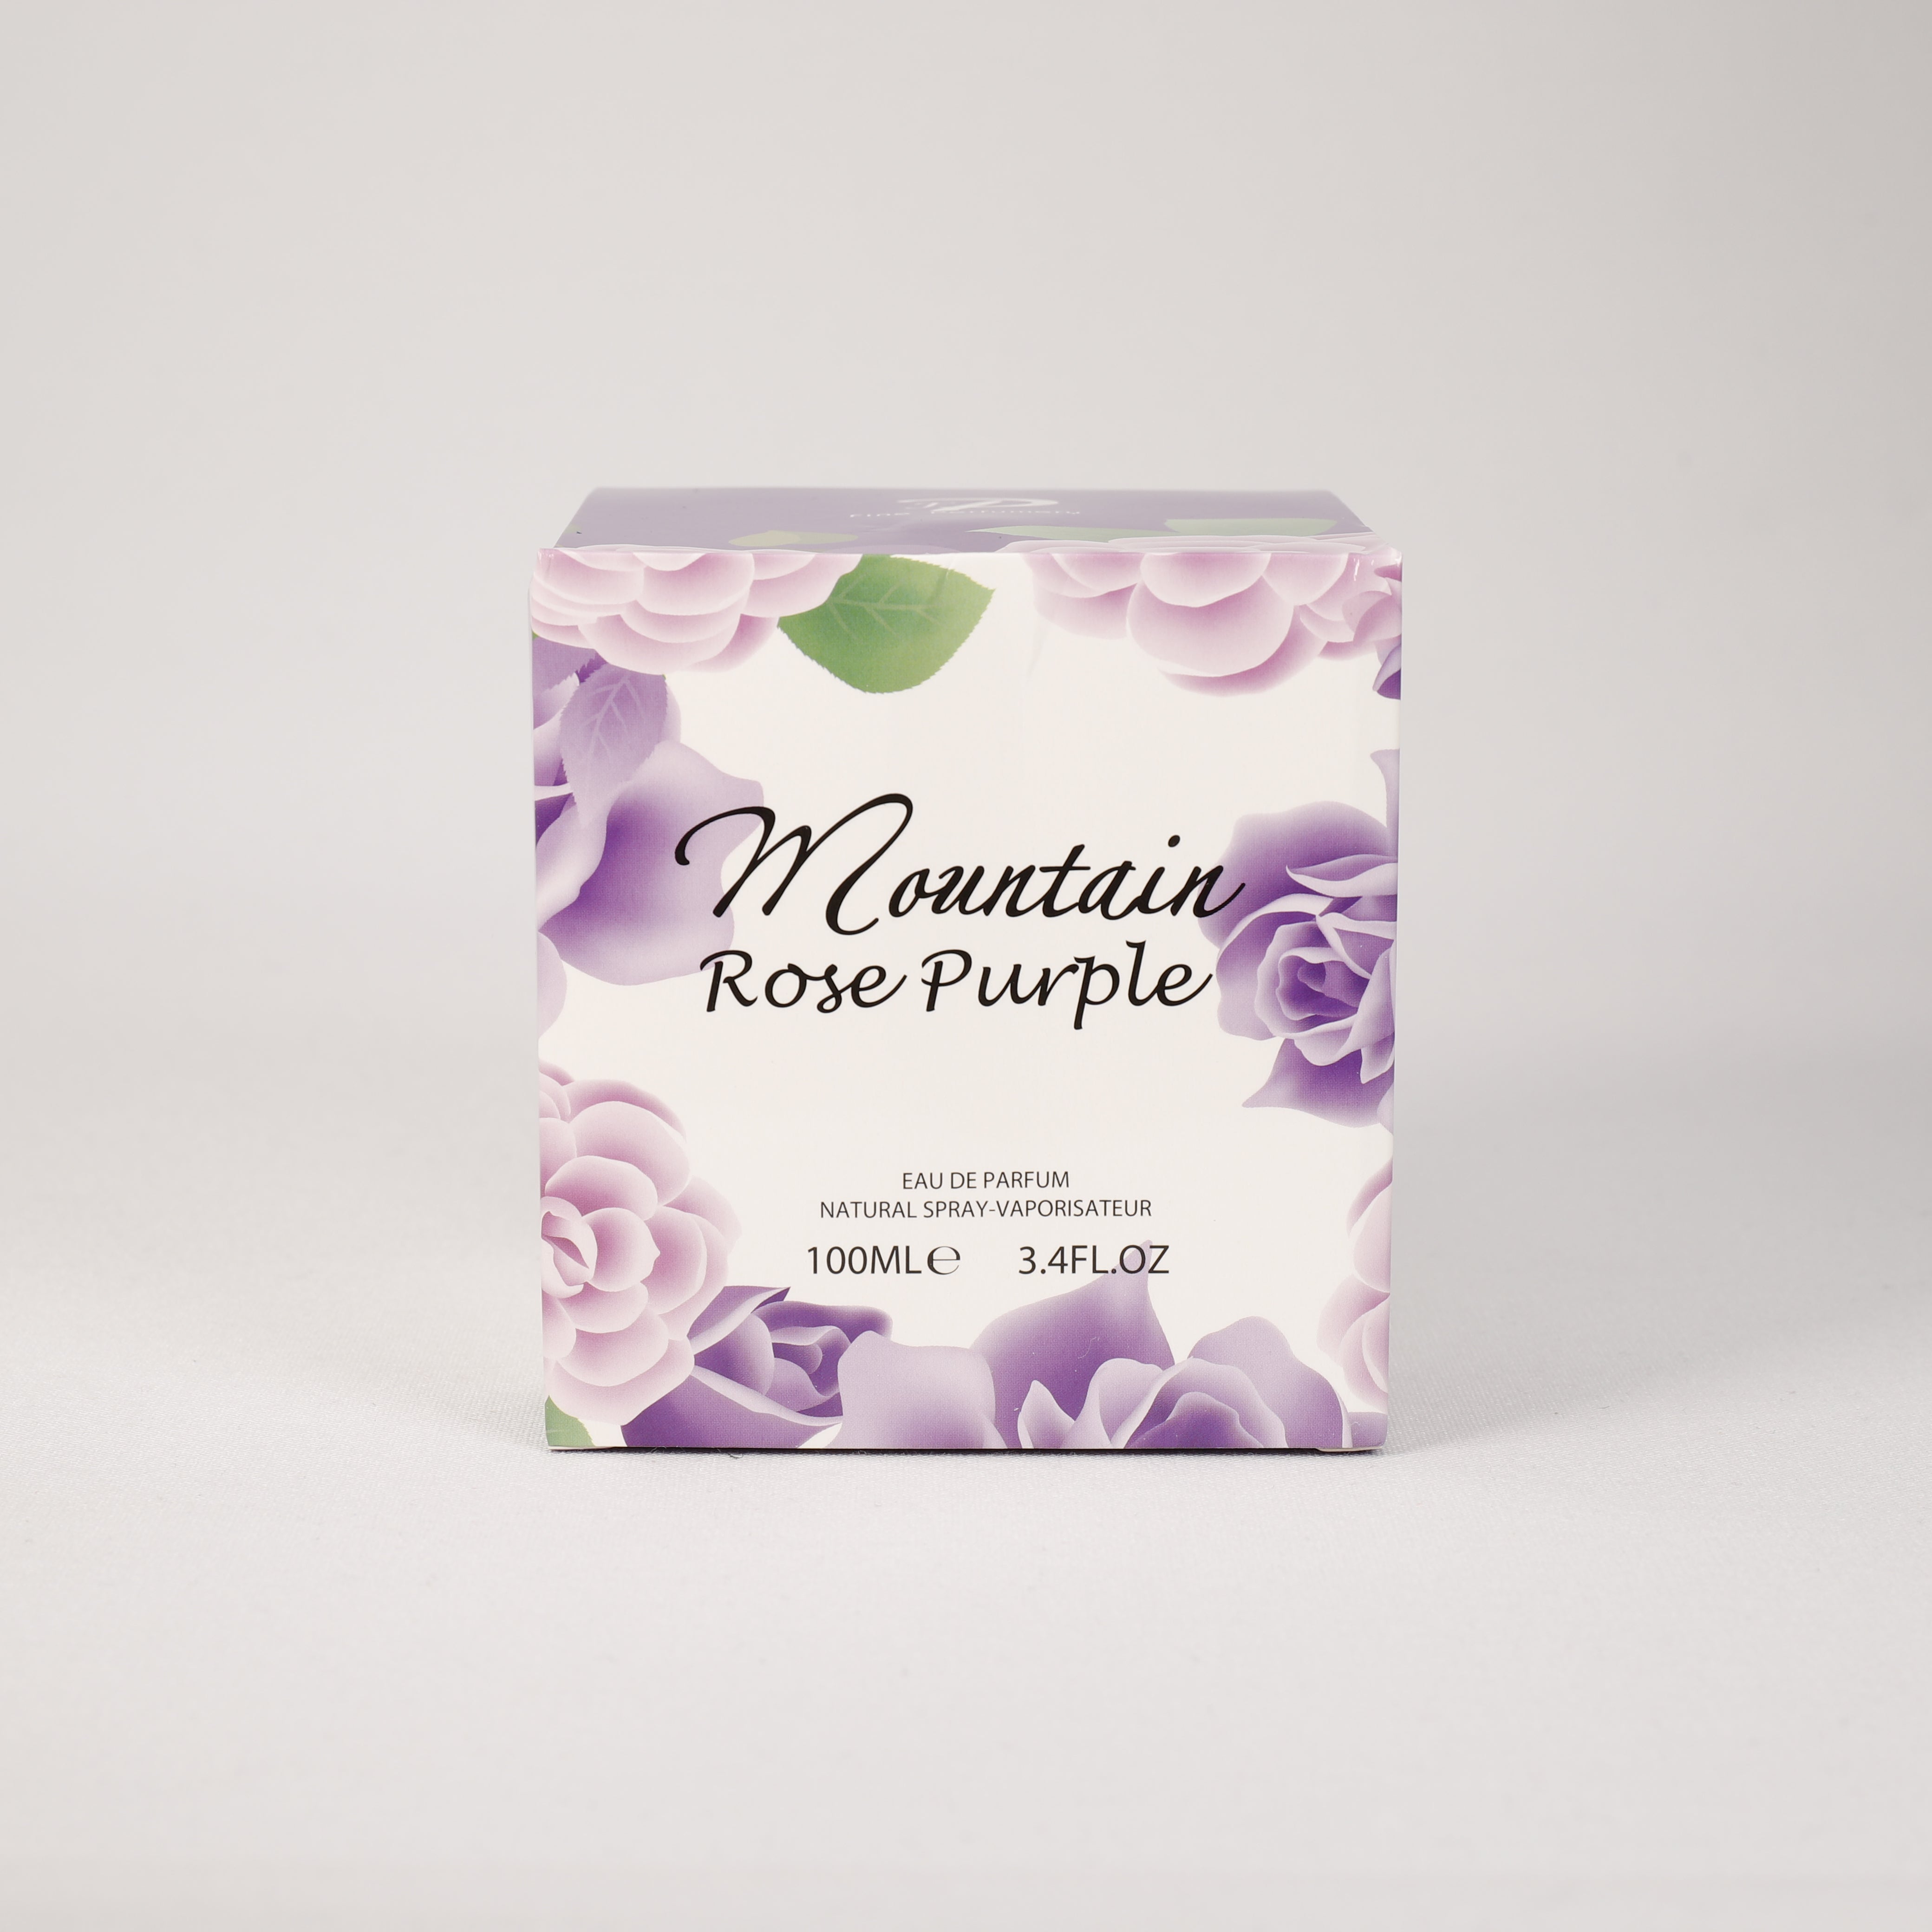 Mountain Rose Purple für Damen, Vaporizer mit natürlichem Spray, 100 ml, Duft, Parfüm, NEU OVP